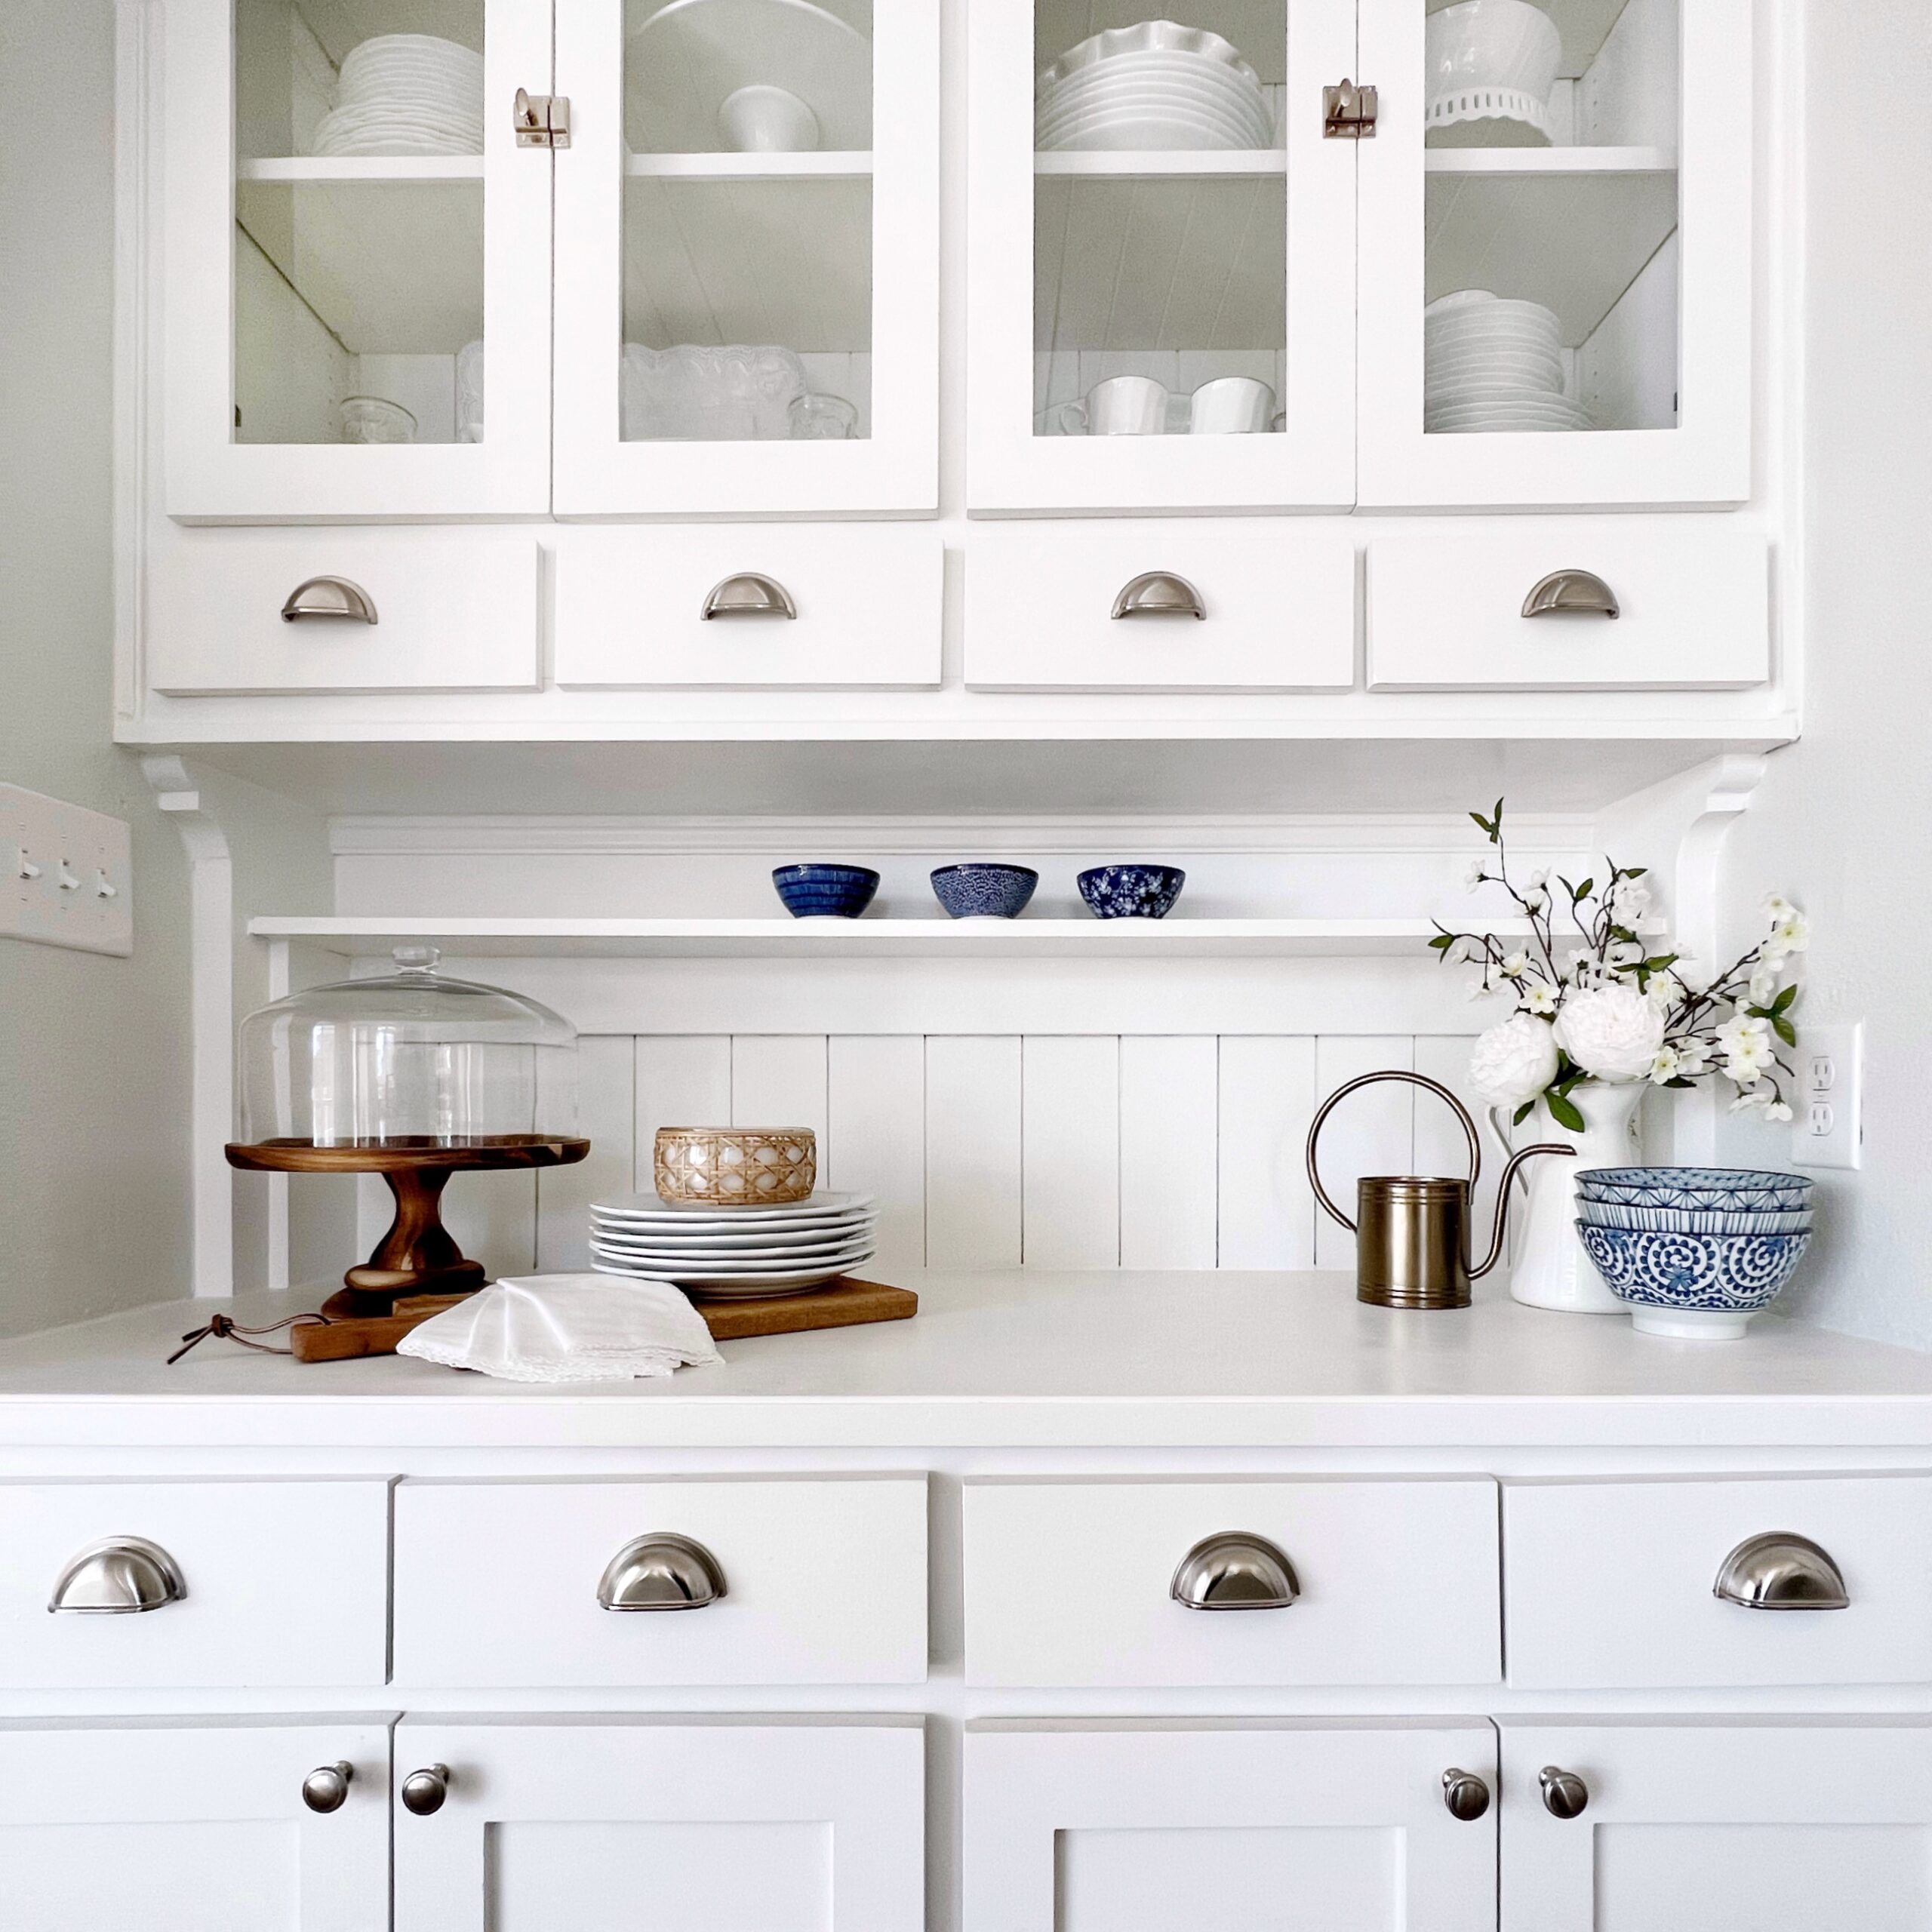 Shelf Under Kitchen Cabinets Design Ideas  Kitchen wall cabinets, Kitchen  cabinet shelves, Floating shelves kitchen